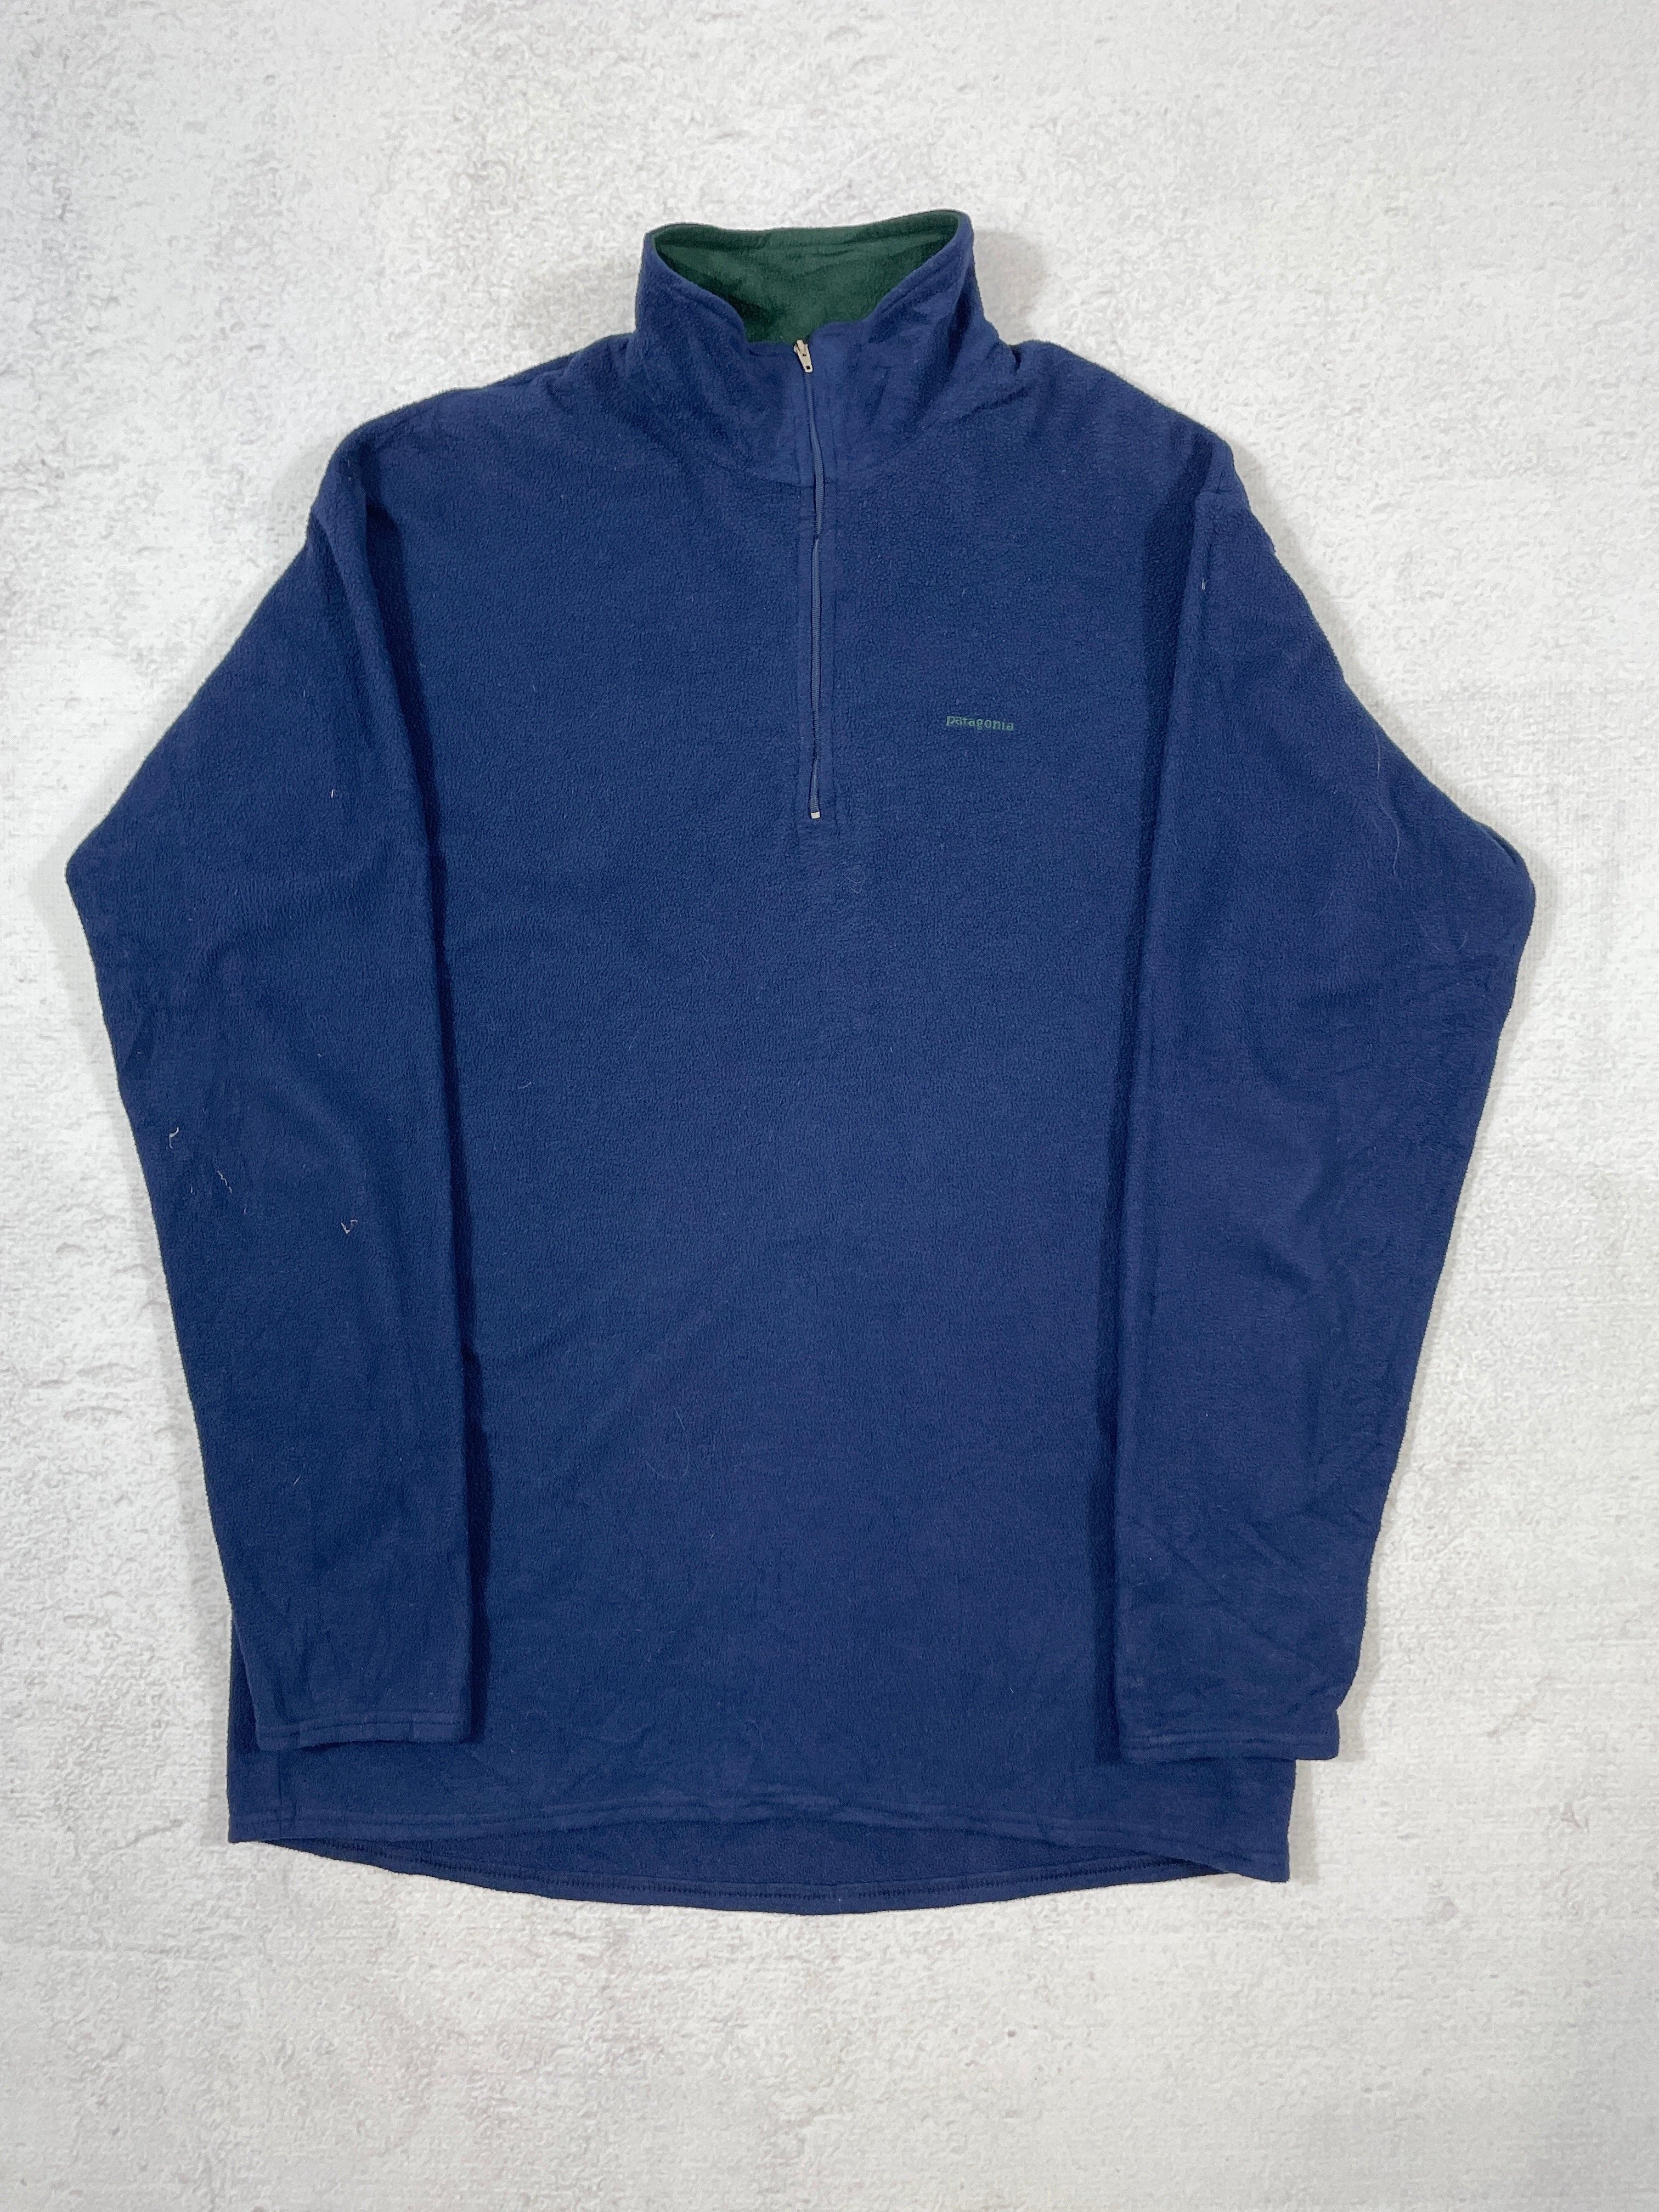 Vintage Patagonia Capilene 1/4 Zip Fleece Sweatshirt - Men's XL